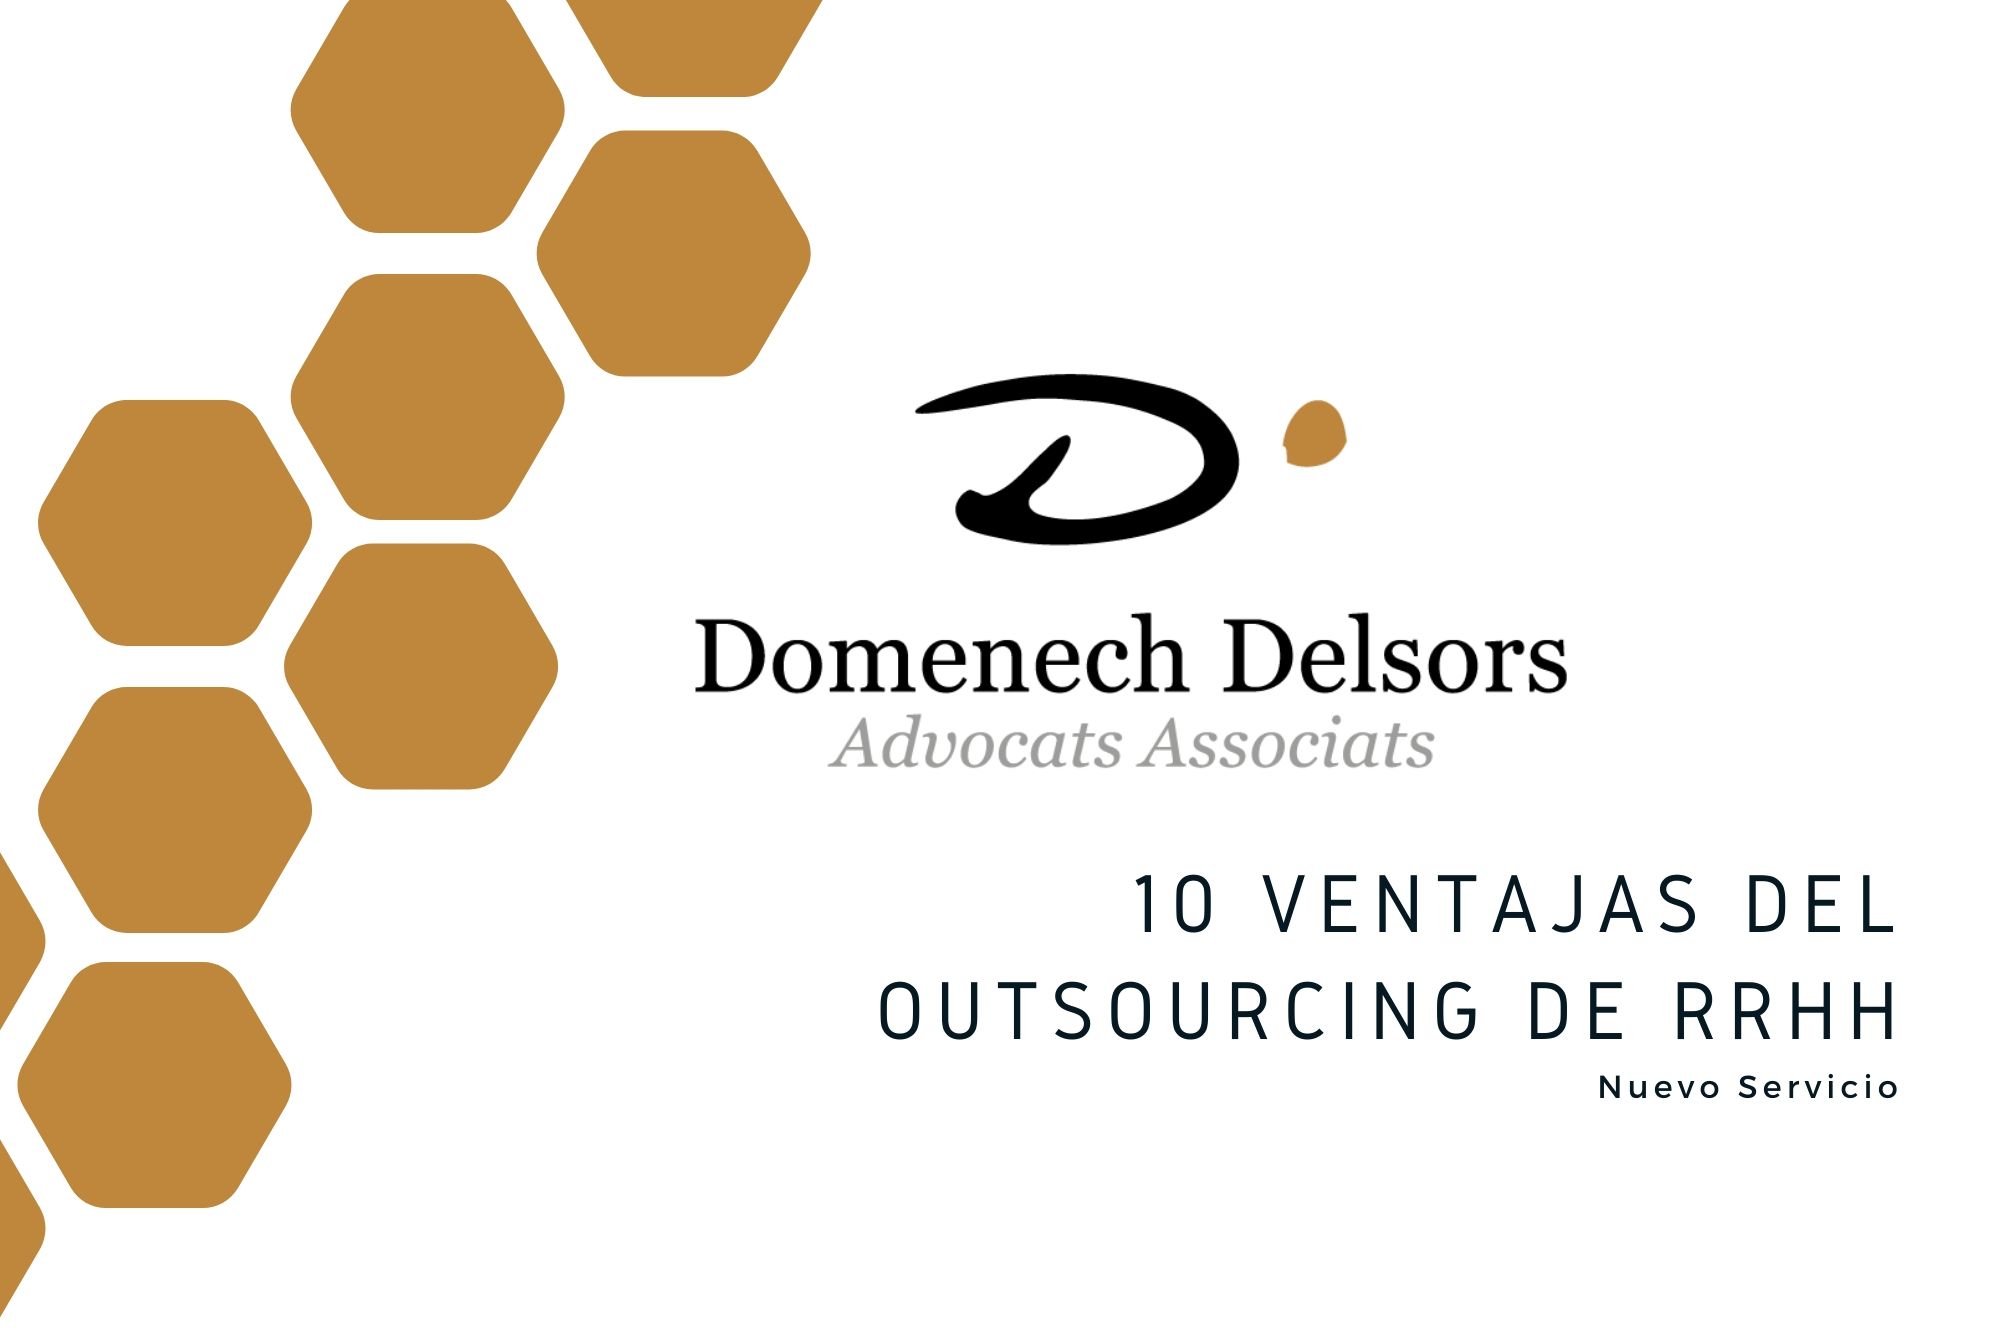 10 Ventajas Del Outsourcing De RRHH De Domenech Delsors Advocats